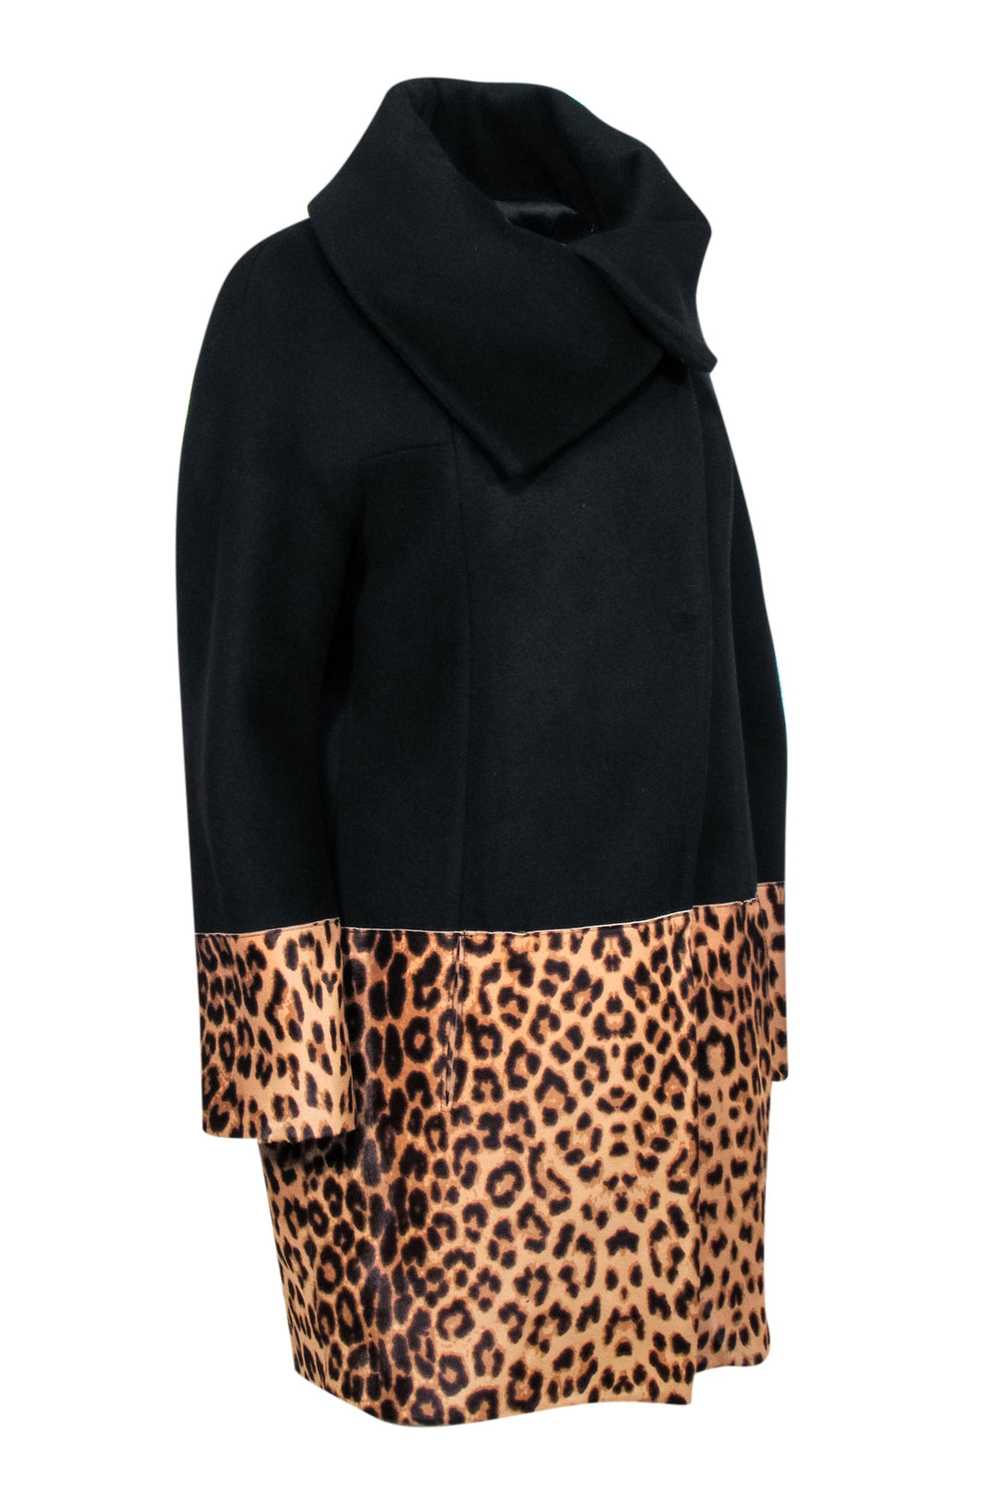 Elie Tahari - Black & Leopard Print Wool blend Co… - image 2